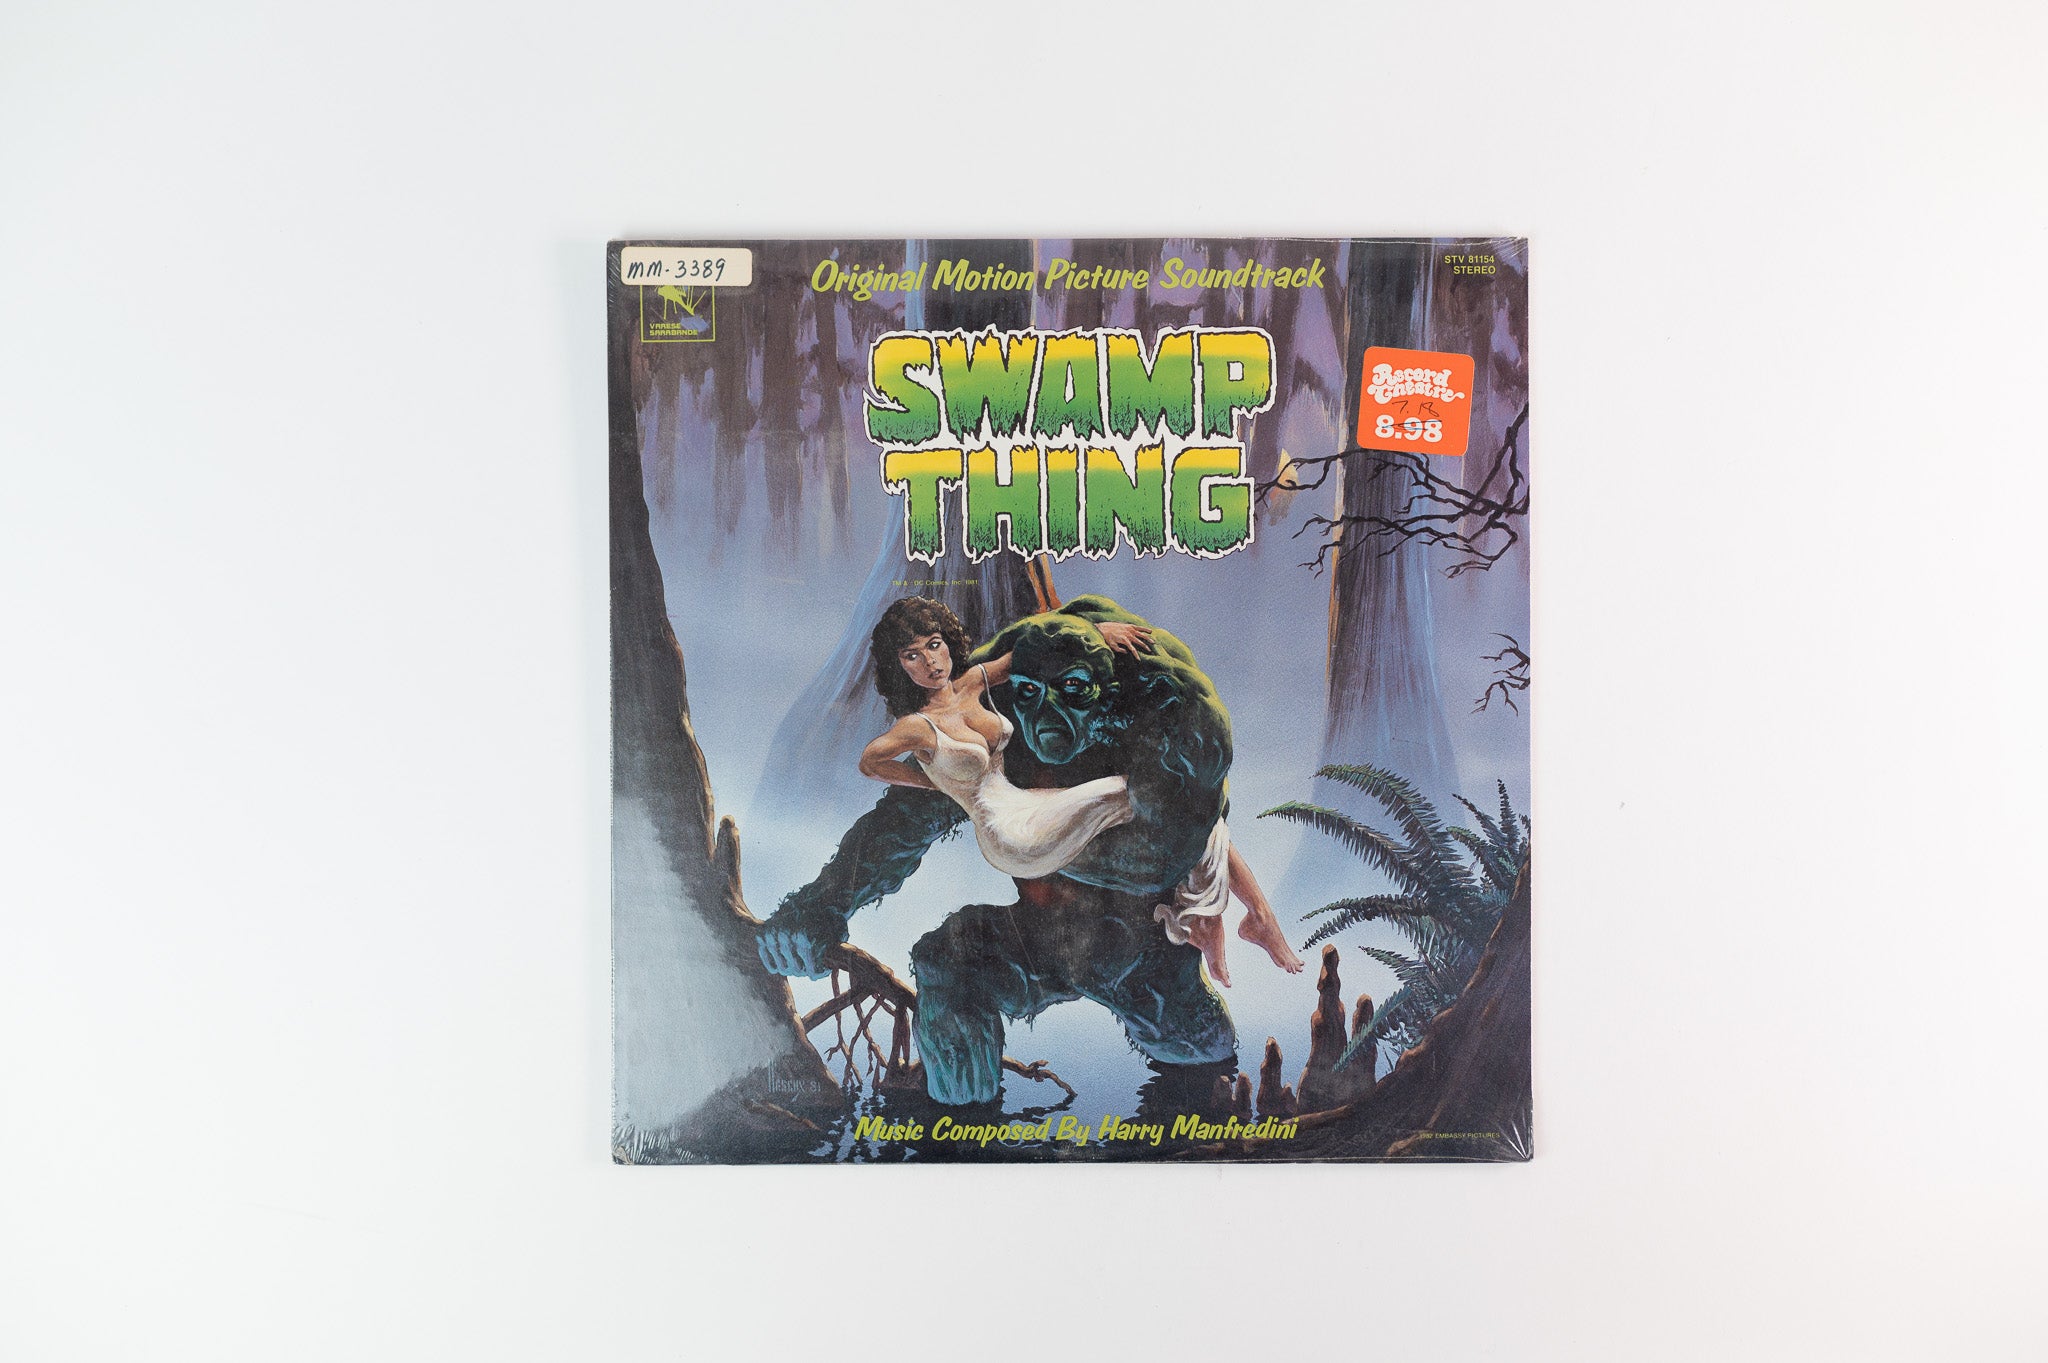 Harry Manfredini - Swamp Thing (Original Motion Picture Soundtrack) on Varese Sarabande Sealed